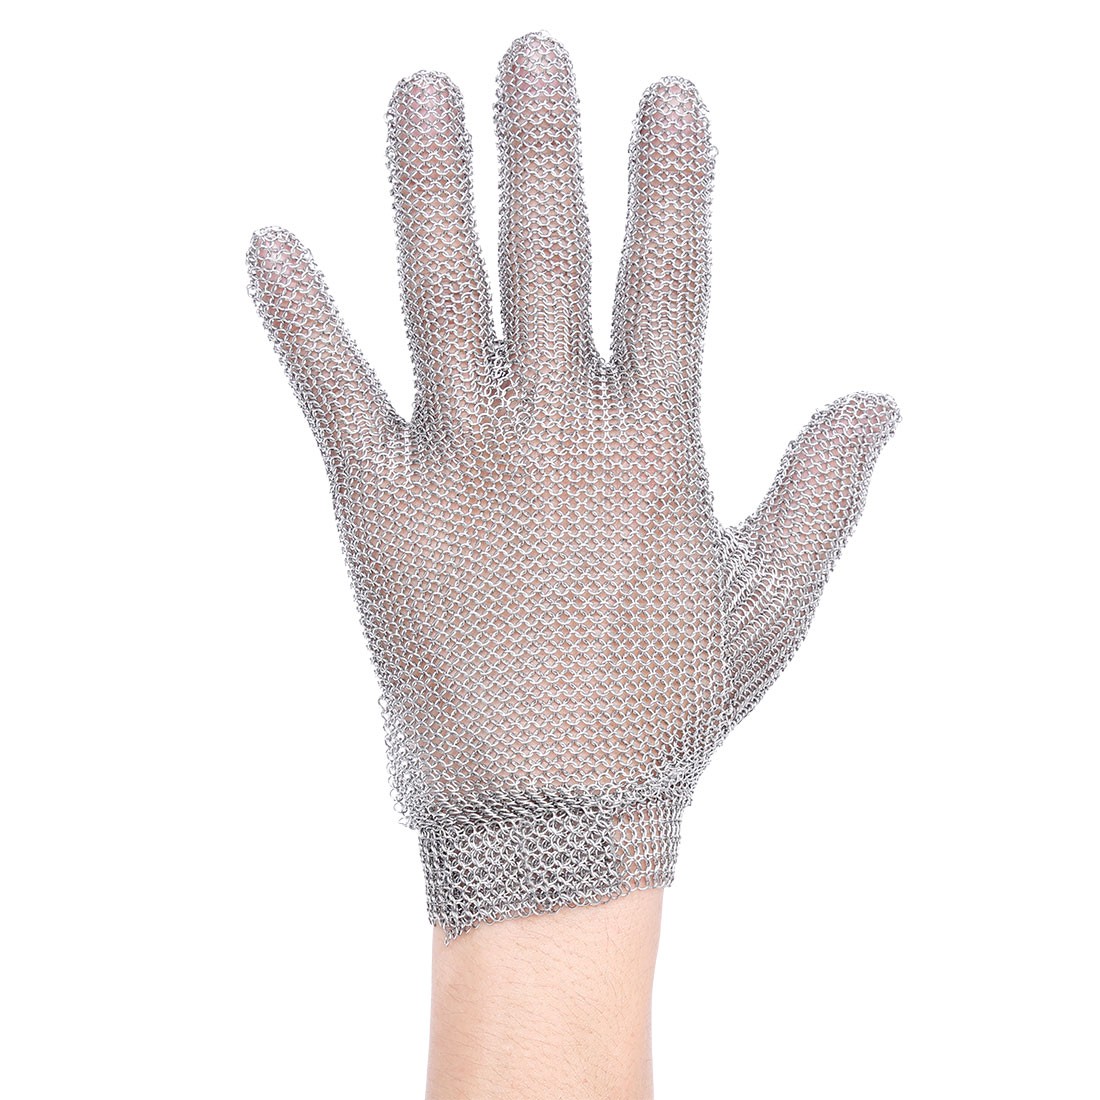 Vente de gants en maille - Anticut